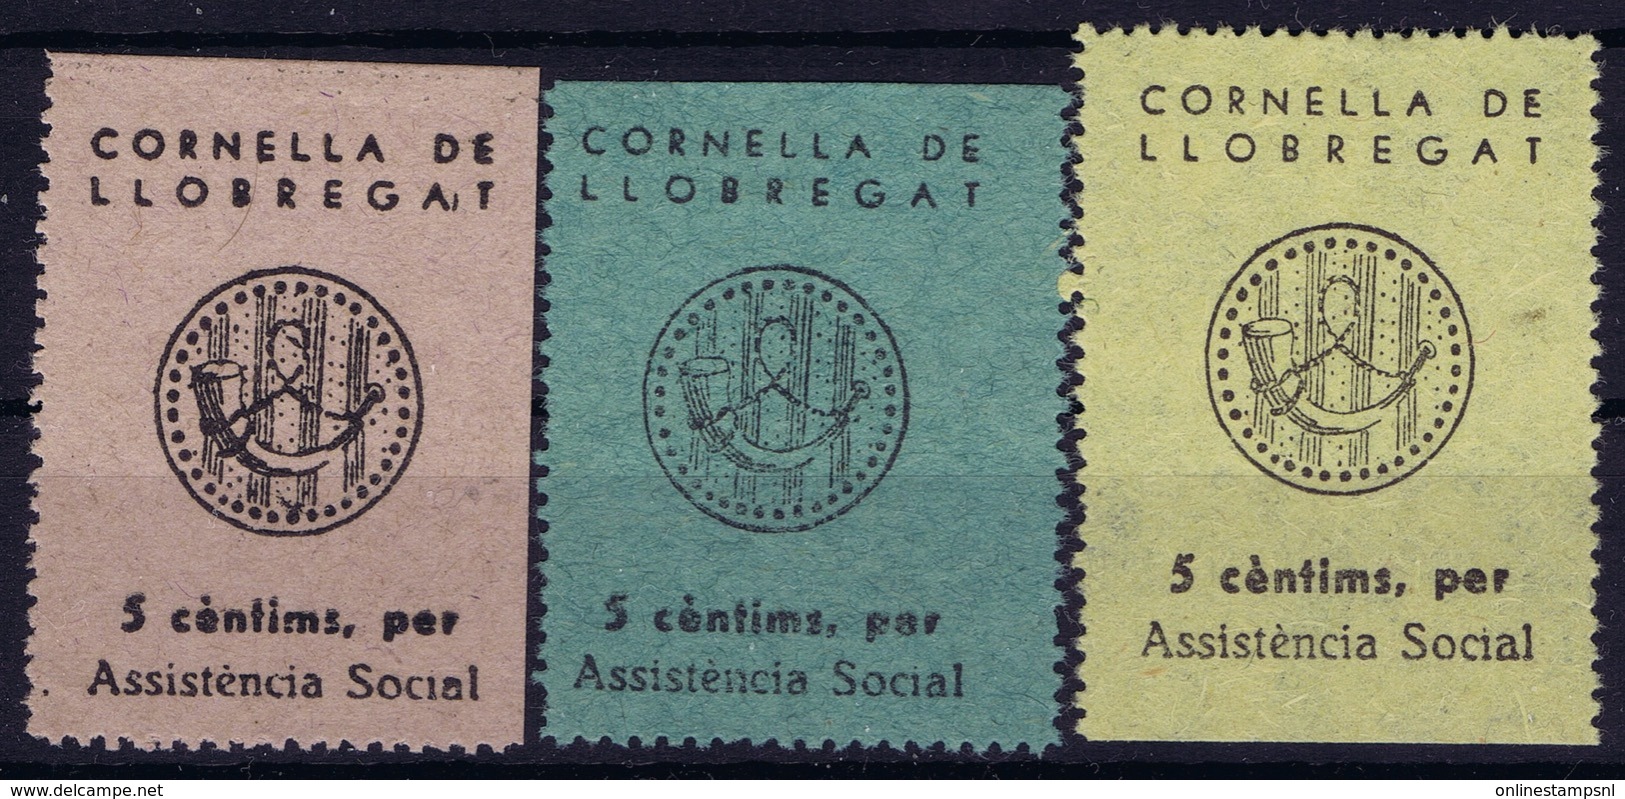 Spian : Asistencia Social Cornella De LLobregat - Spanish Civil War Labels